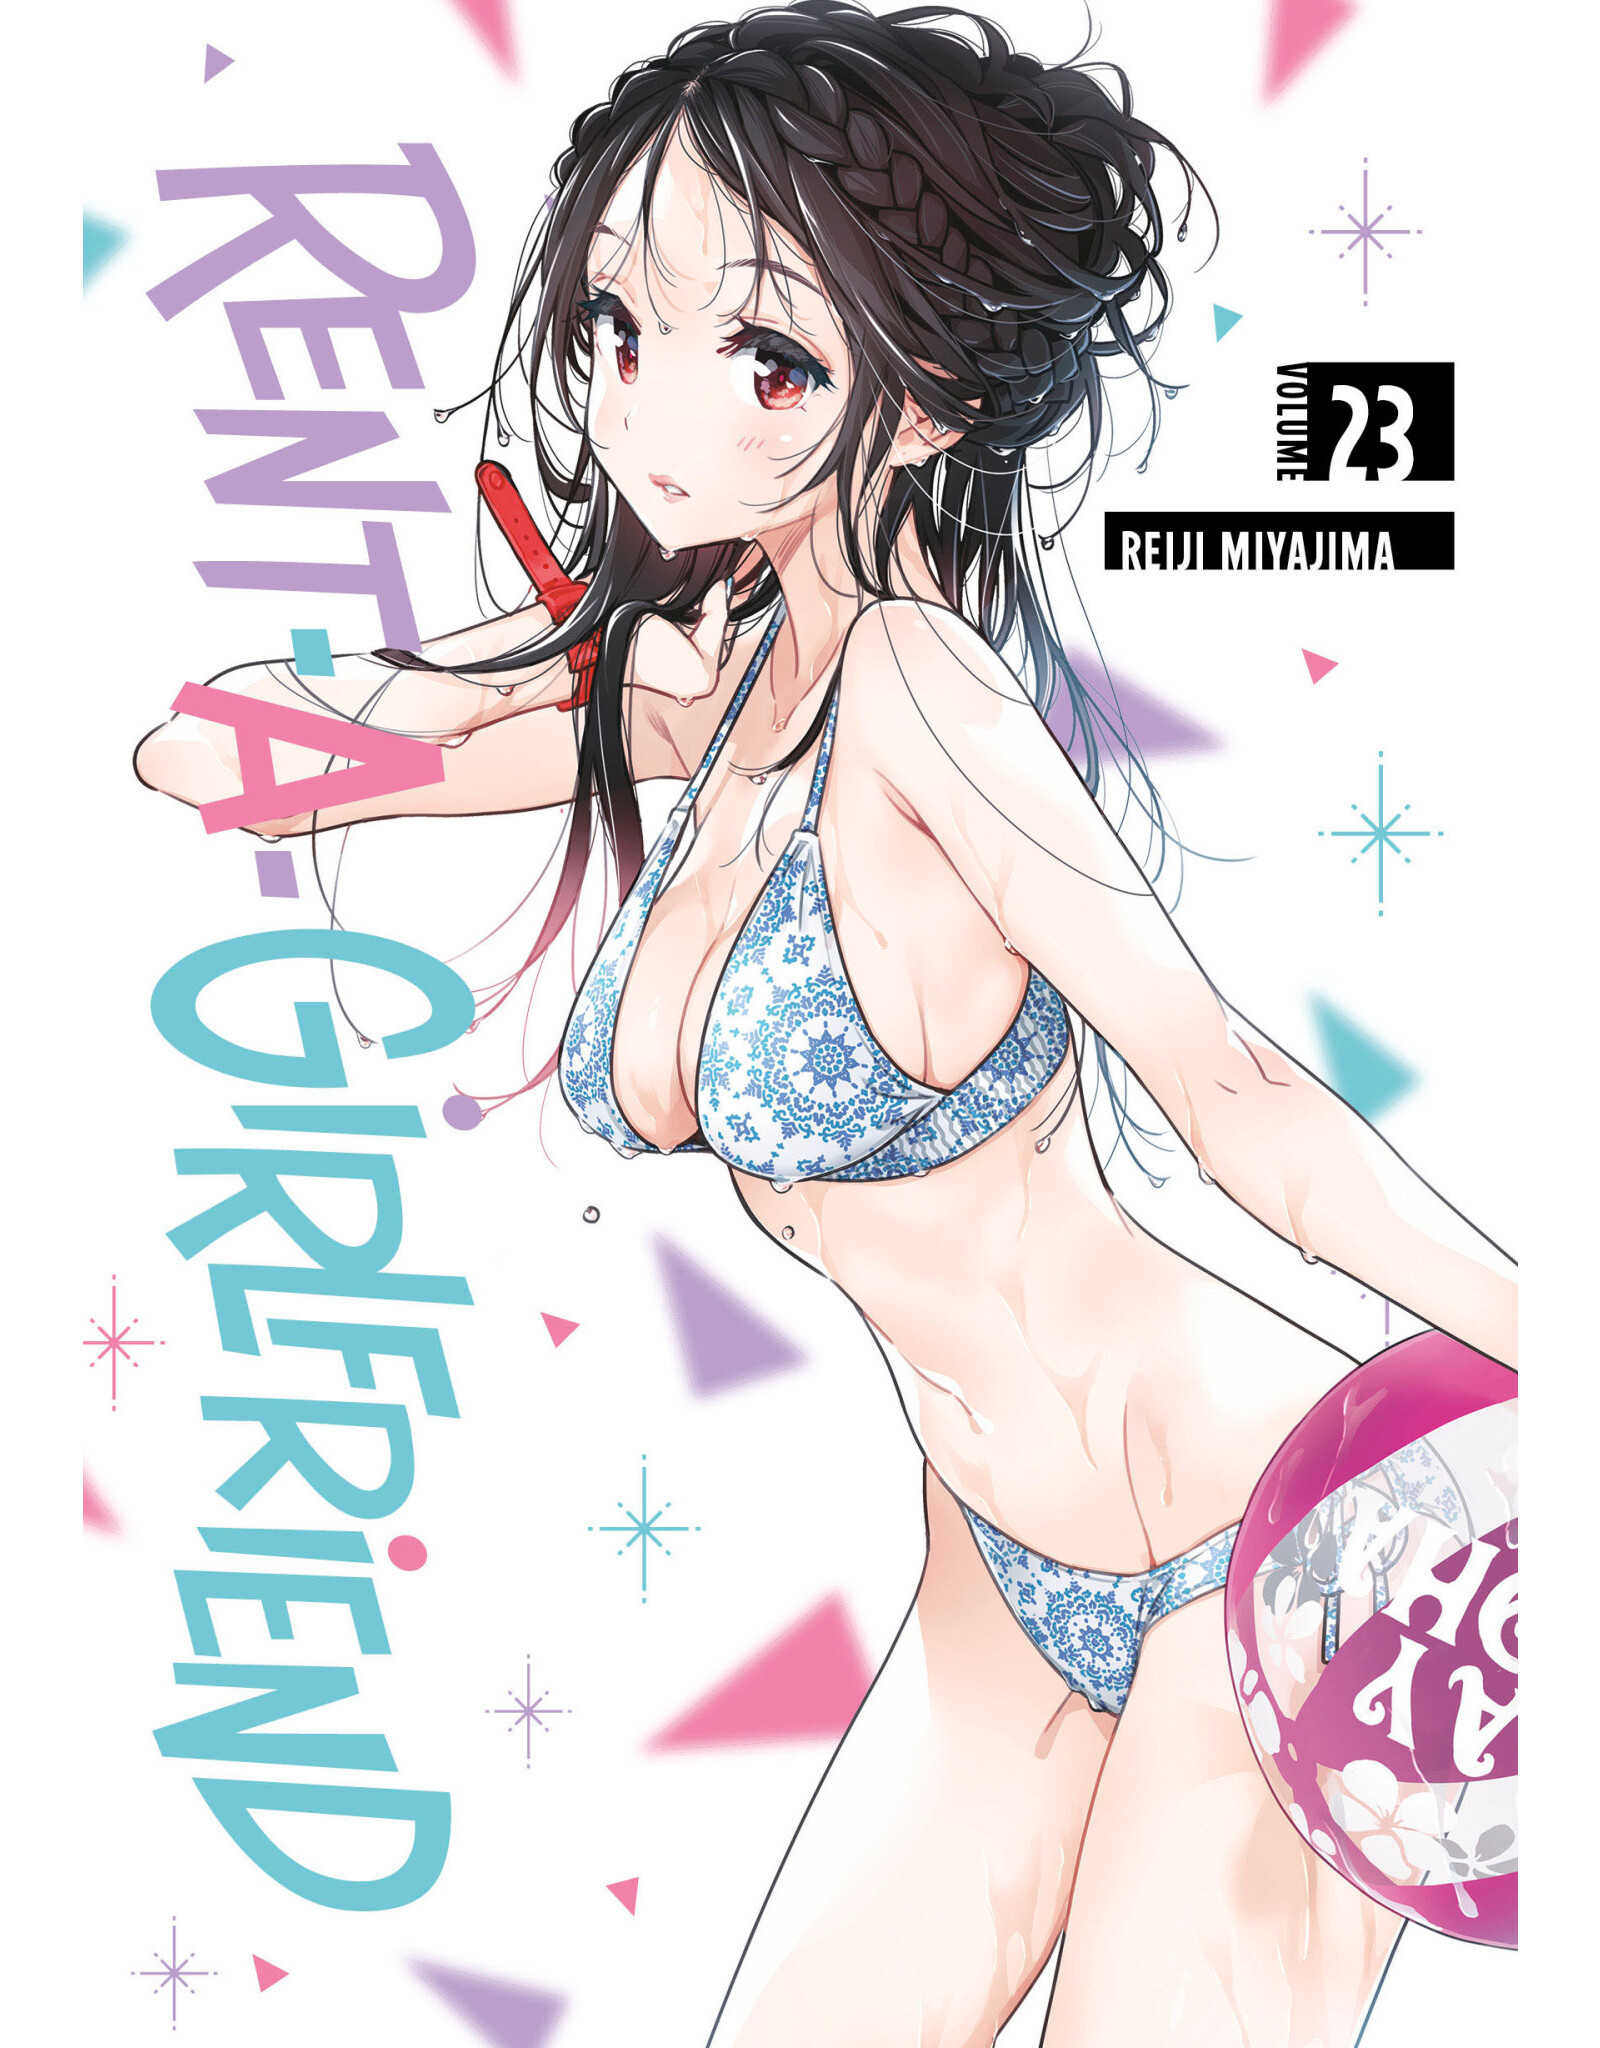 Rent-A-Girlfriend 23 (Engelstalig) - Manga